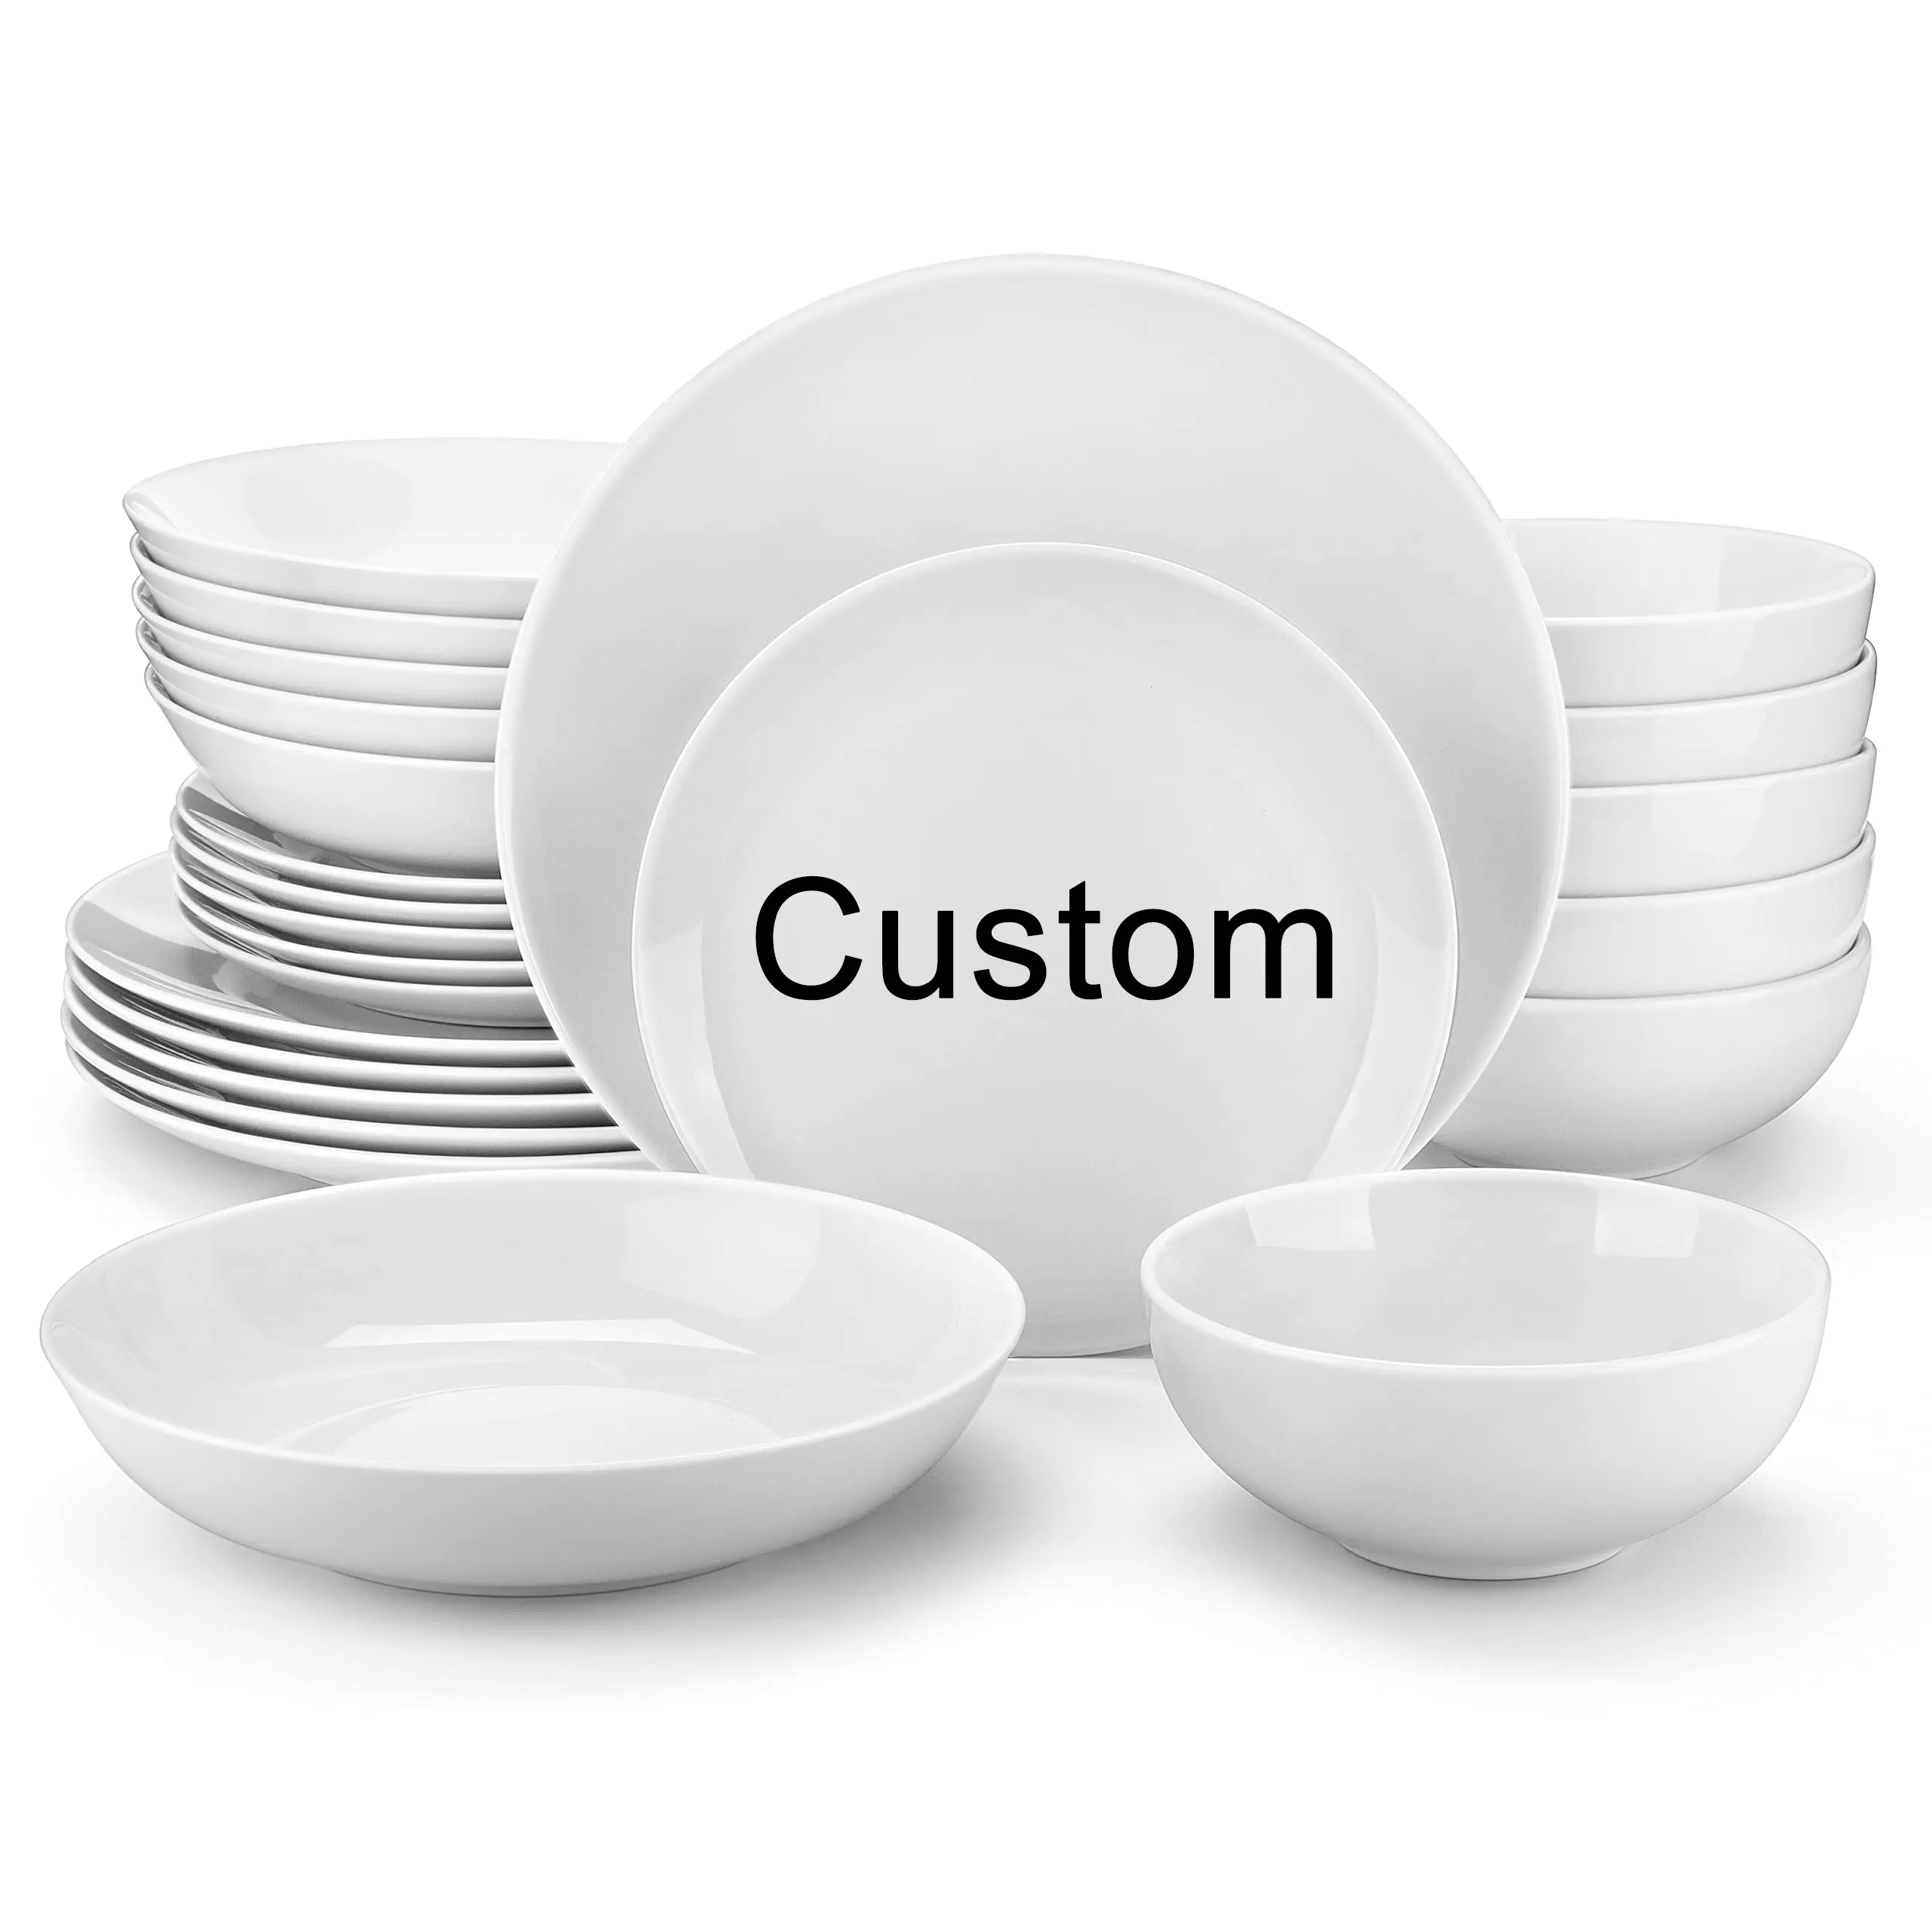 As placas brancas customizáveis feitas sob encomenda da louça da porcelana do logotipo do restaurante ajustam os pratos redondos podem Plato placas cerâmicas para restaurantes